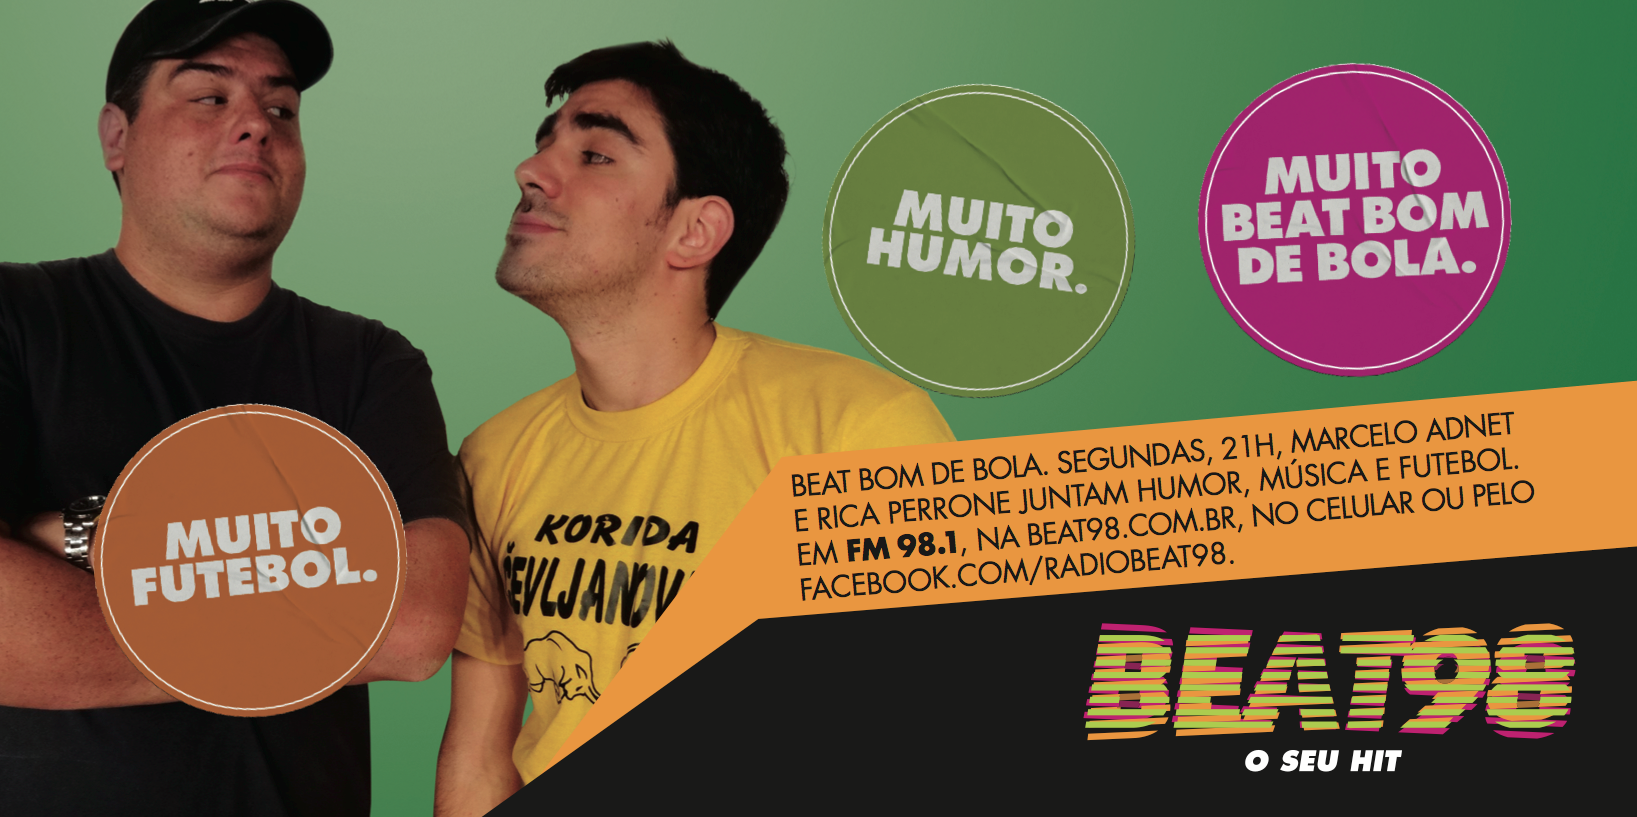 Beat Bom de Bola (20/05)